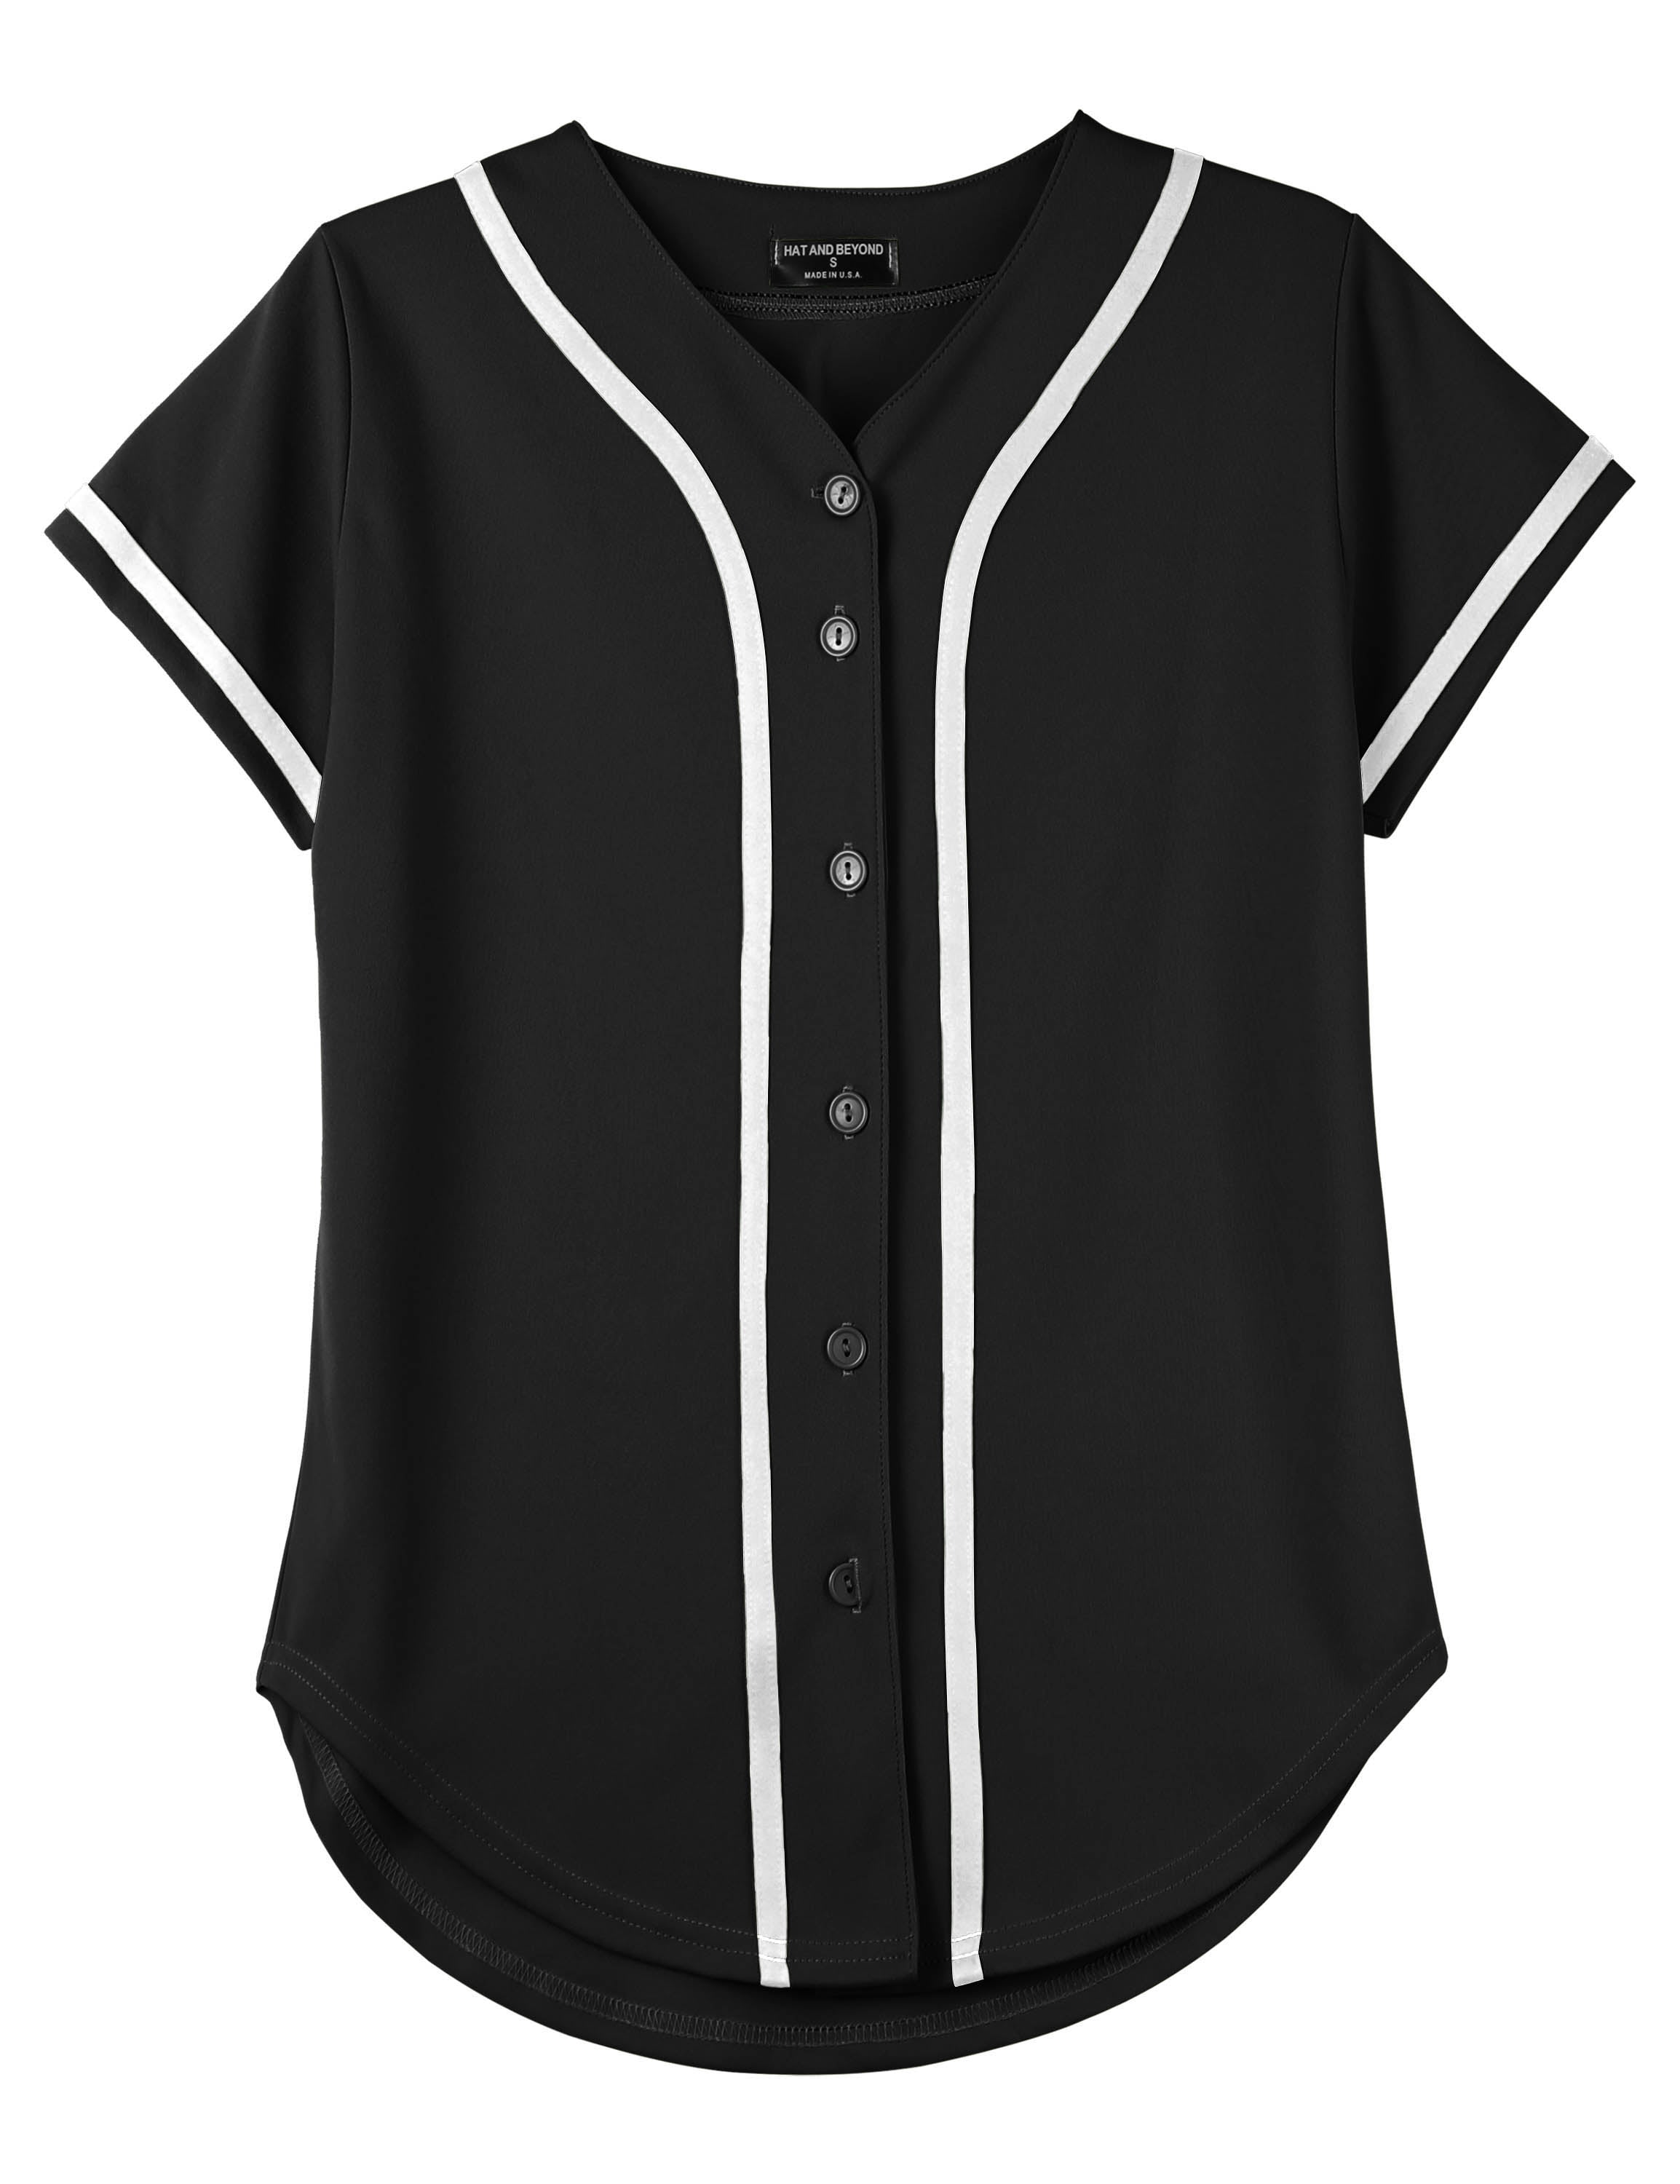 oldtimetown Womens Button Down Baseball Jersey Hip Hop Hipster Short Sleeve Active Shirts Blank Softball Team Uniform 